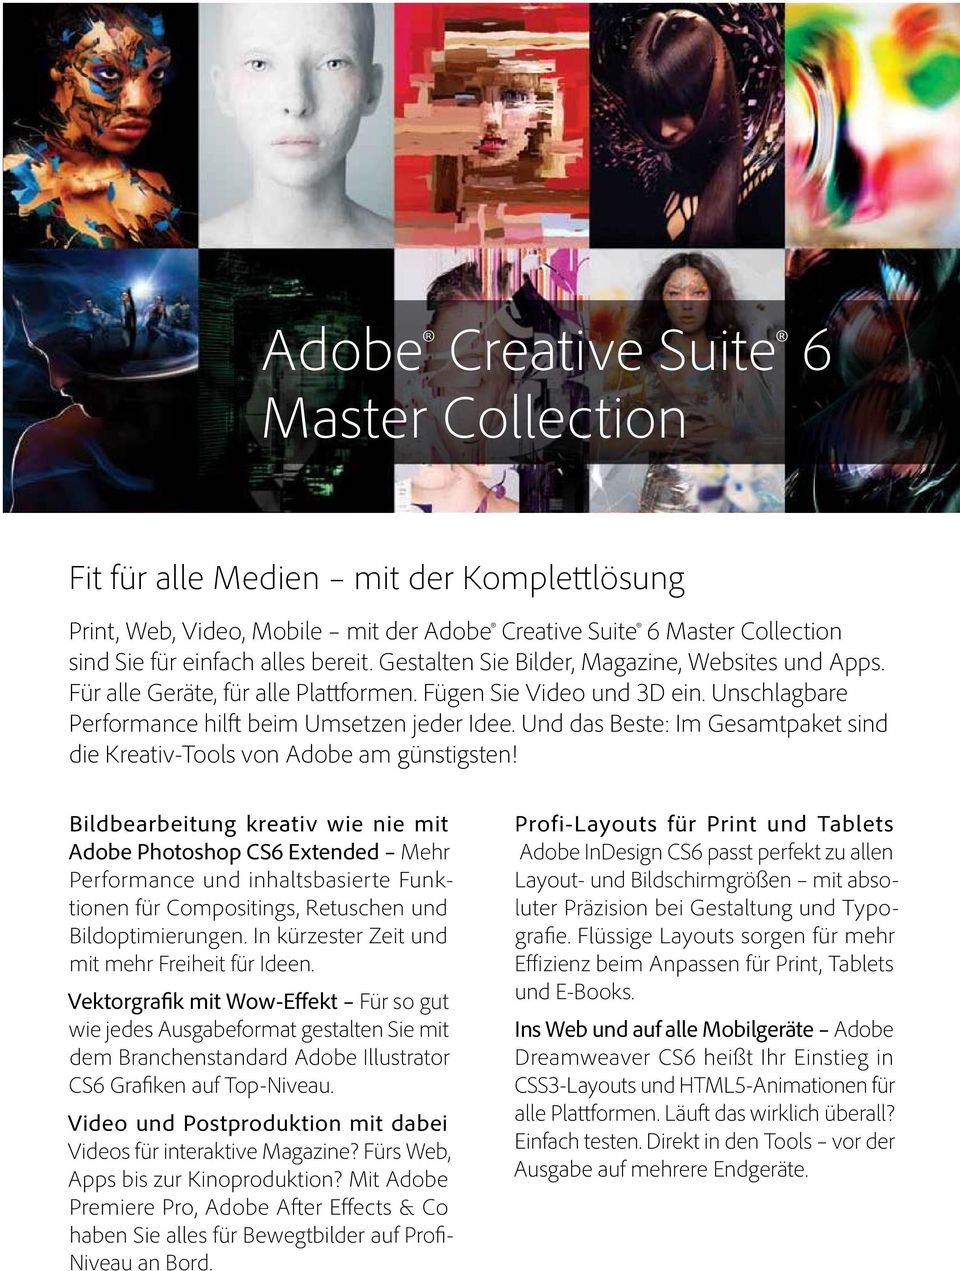 Und das Beste: Im Gesamtpaket sind die Kreativ-Tools von Adobe am günstigsten!